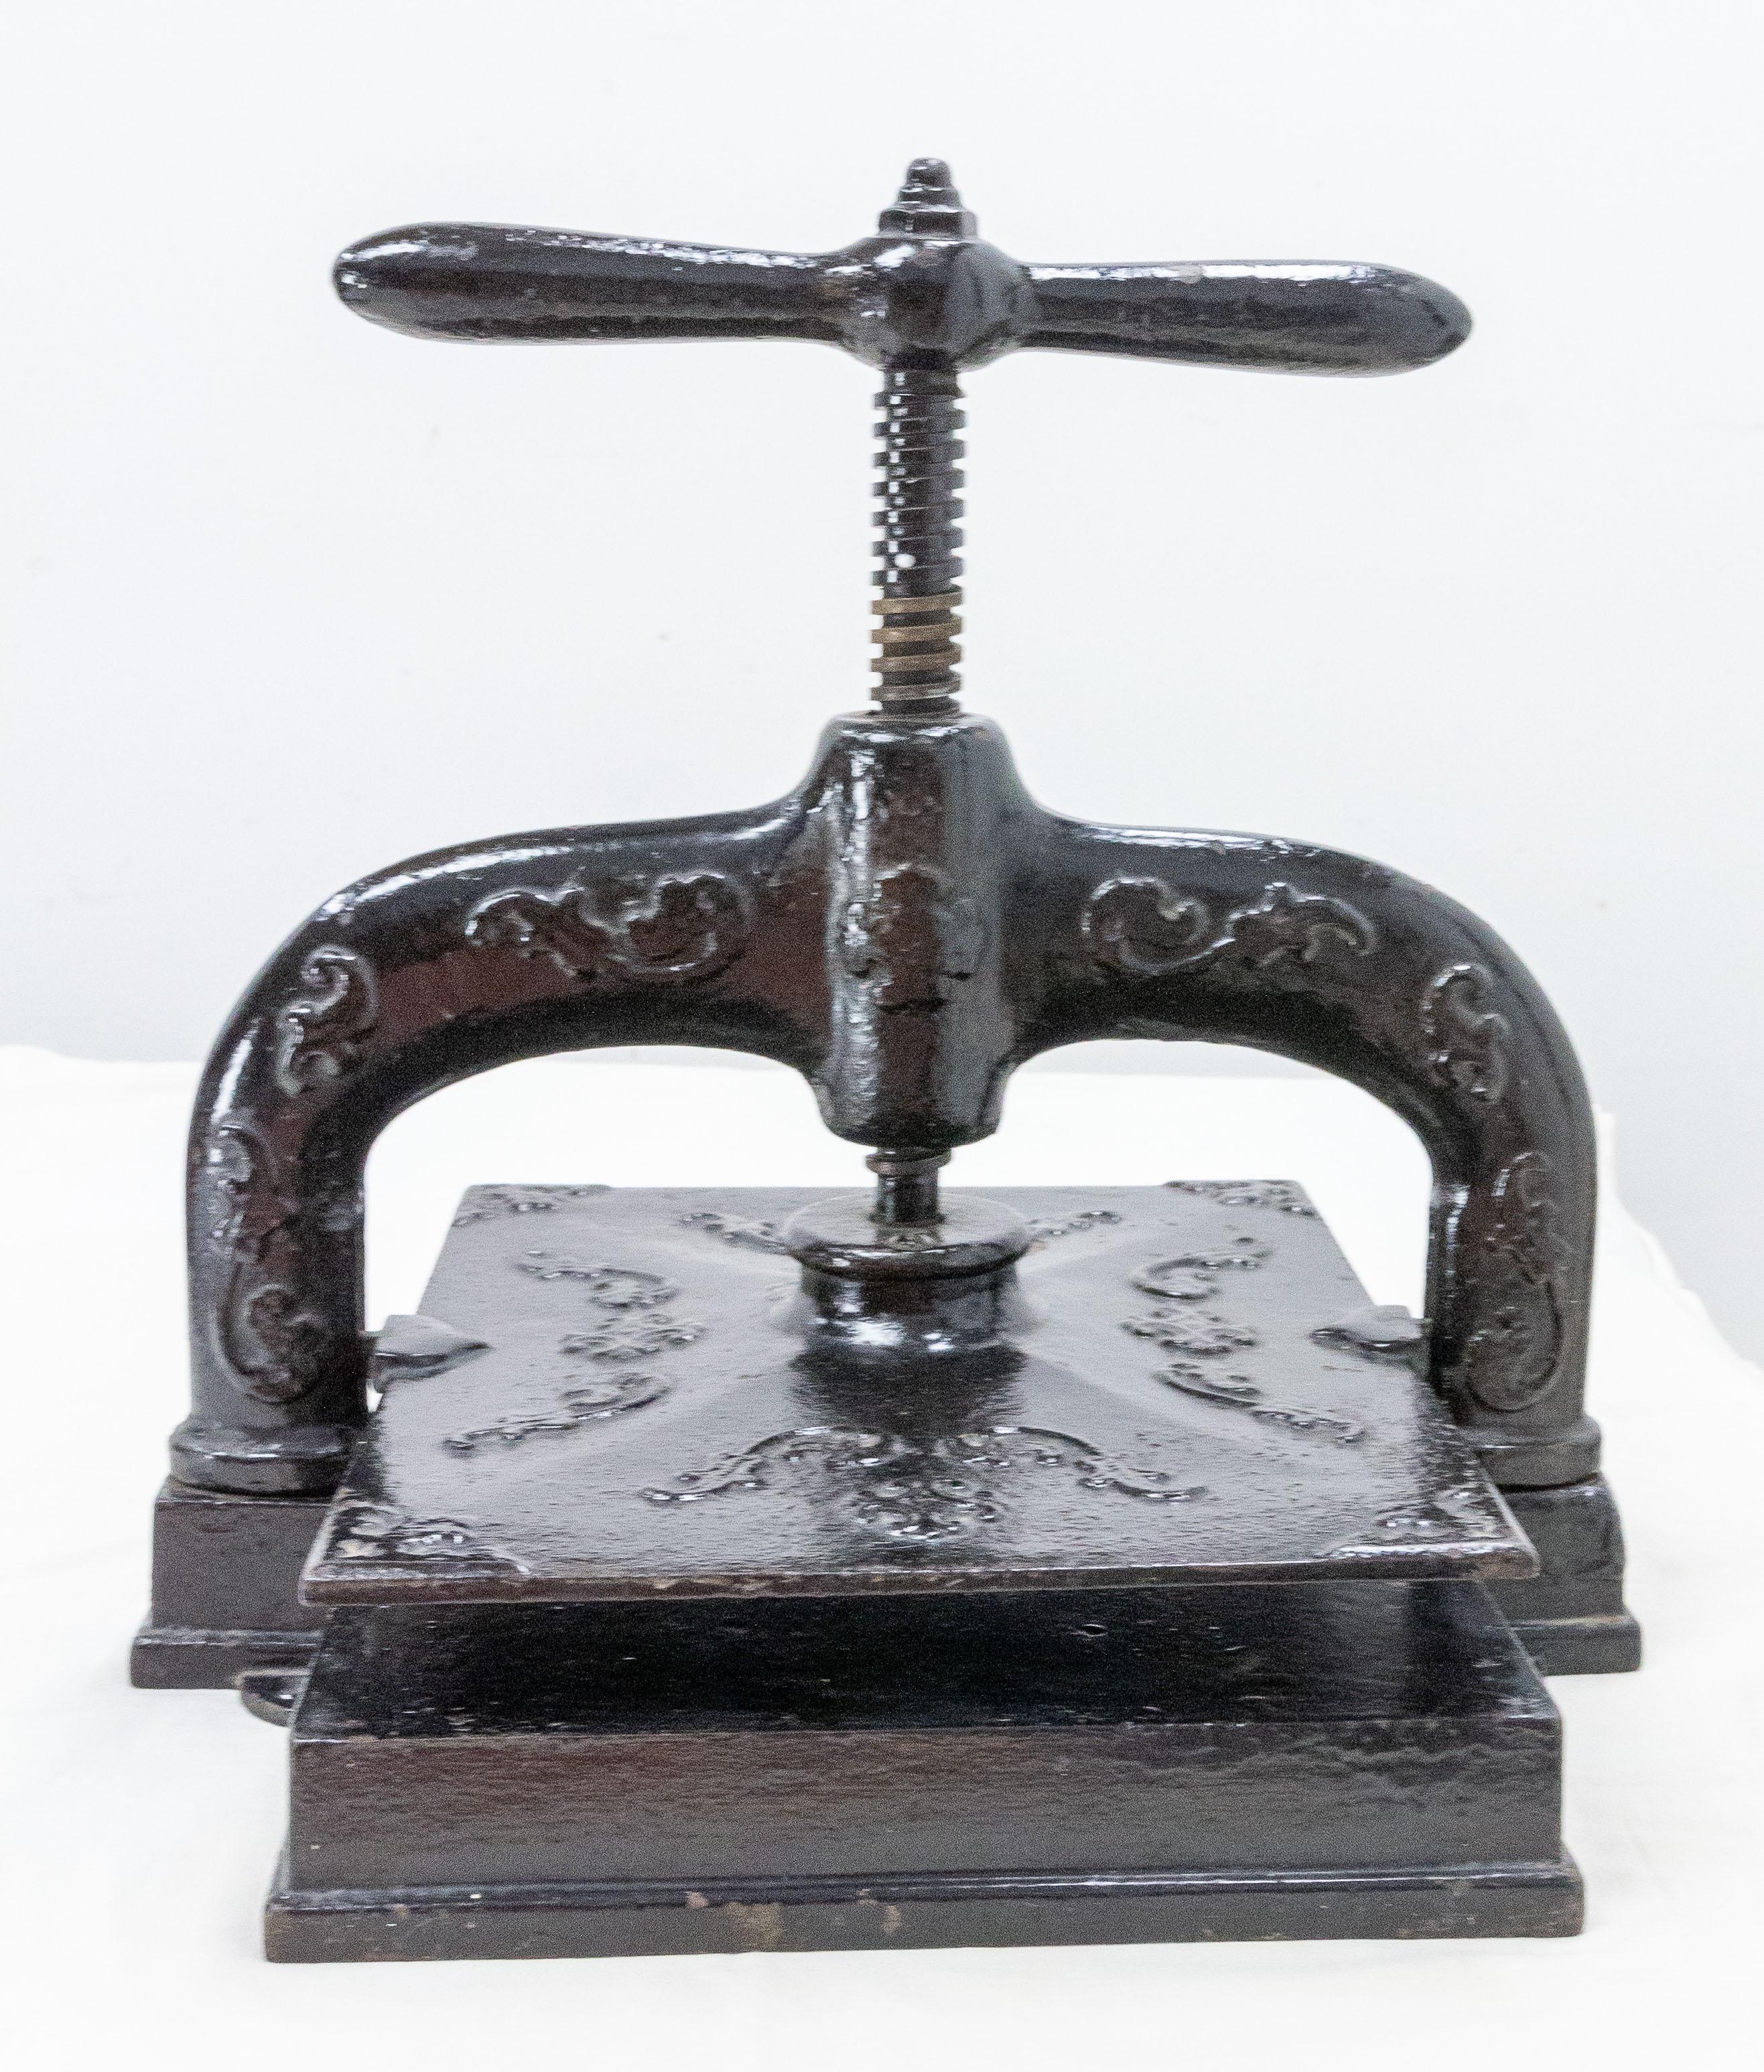 Diese schmiedeeiserne Buchpresse wurde im späten 19. Jahrhundert in Frankreich für eine Werkstatt hergestellt.
Patina und Gebrauchsspuren machen dieses antike Objekt sehr charaktervoll.

Versand:
P30 L33 H 30 12,4 kg.